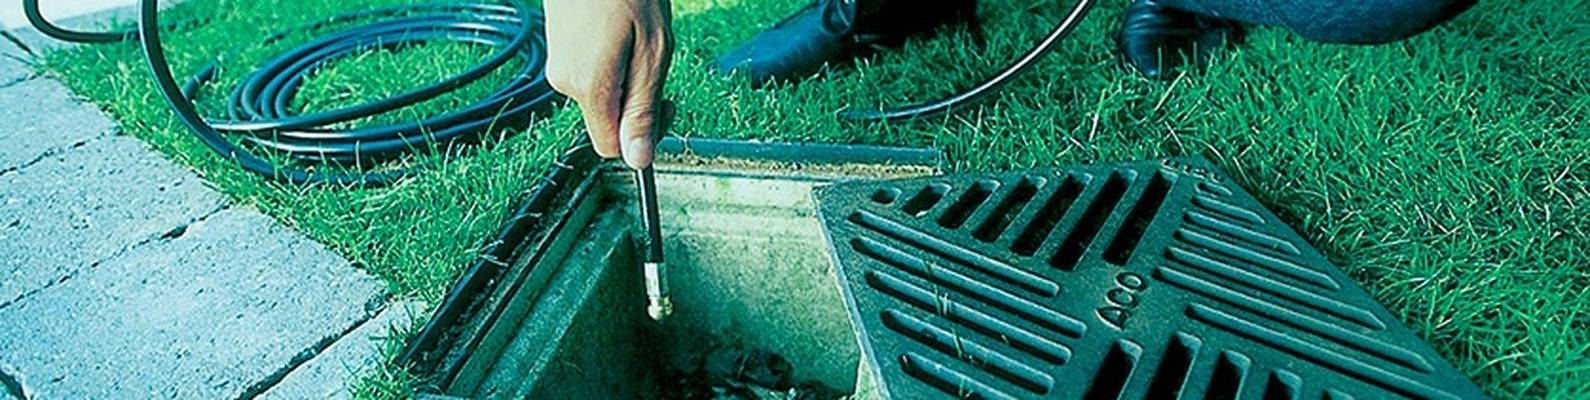 Прочистка ливневой канализации: пошаговая инструкция